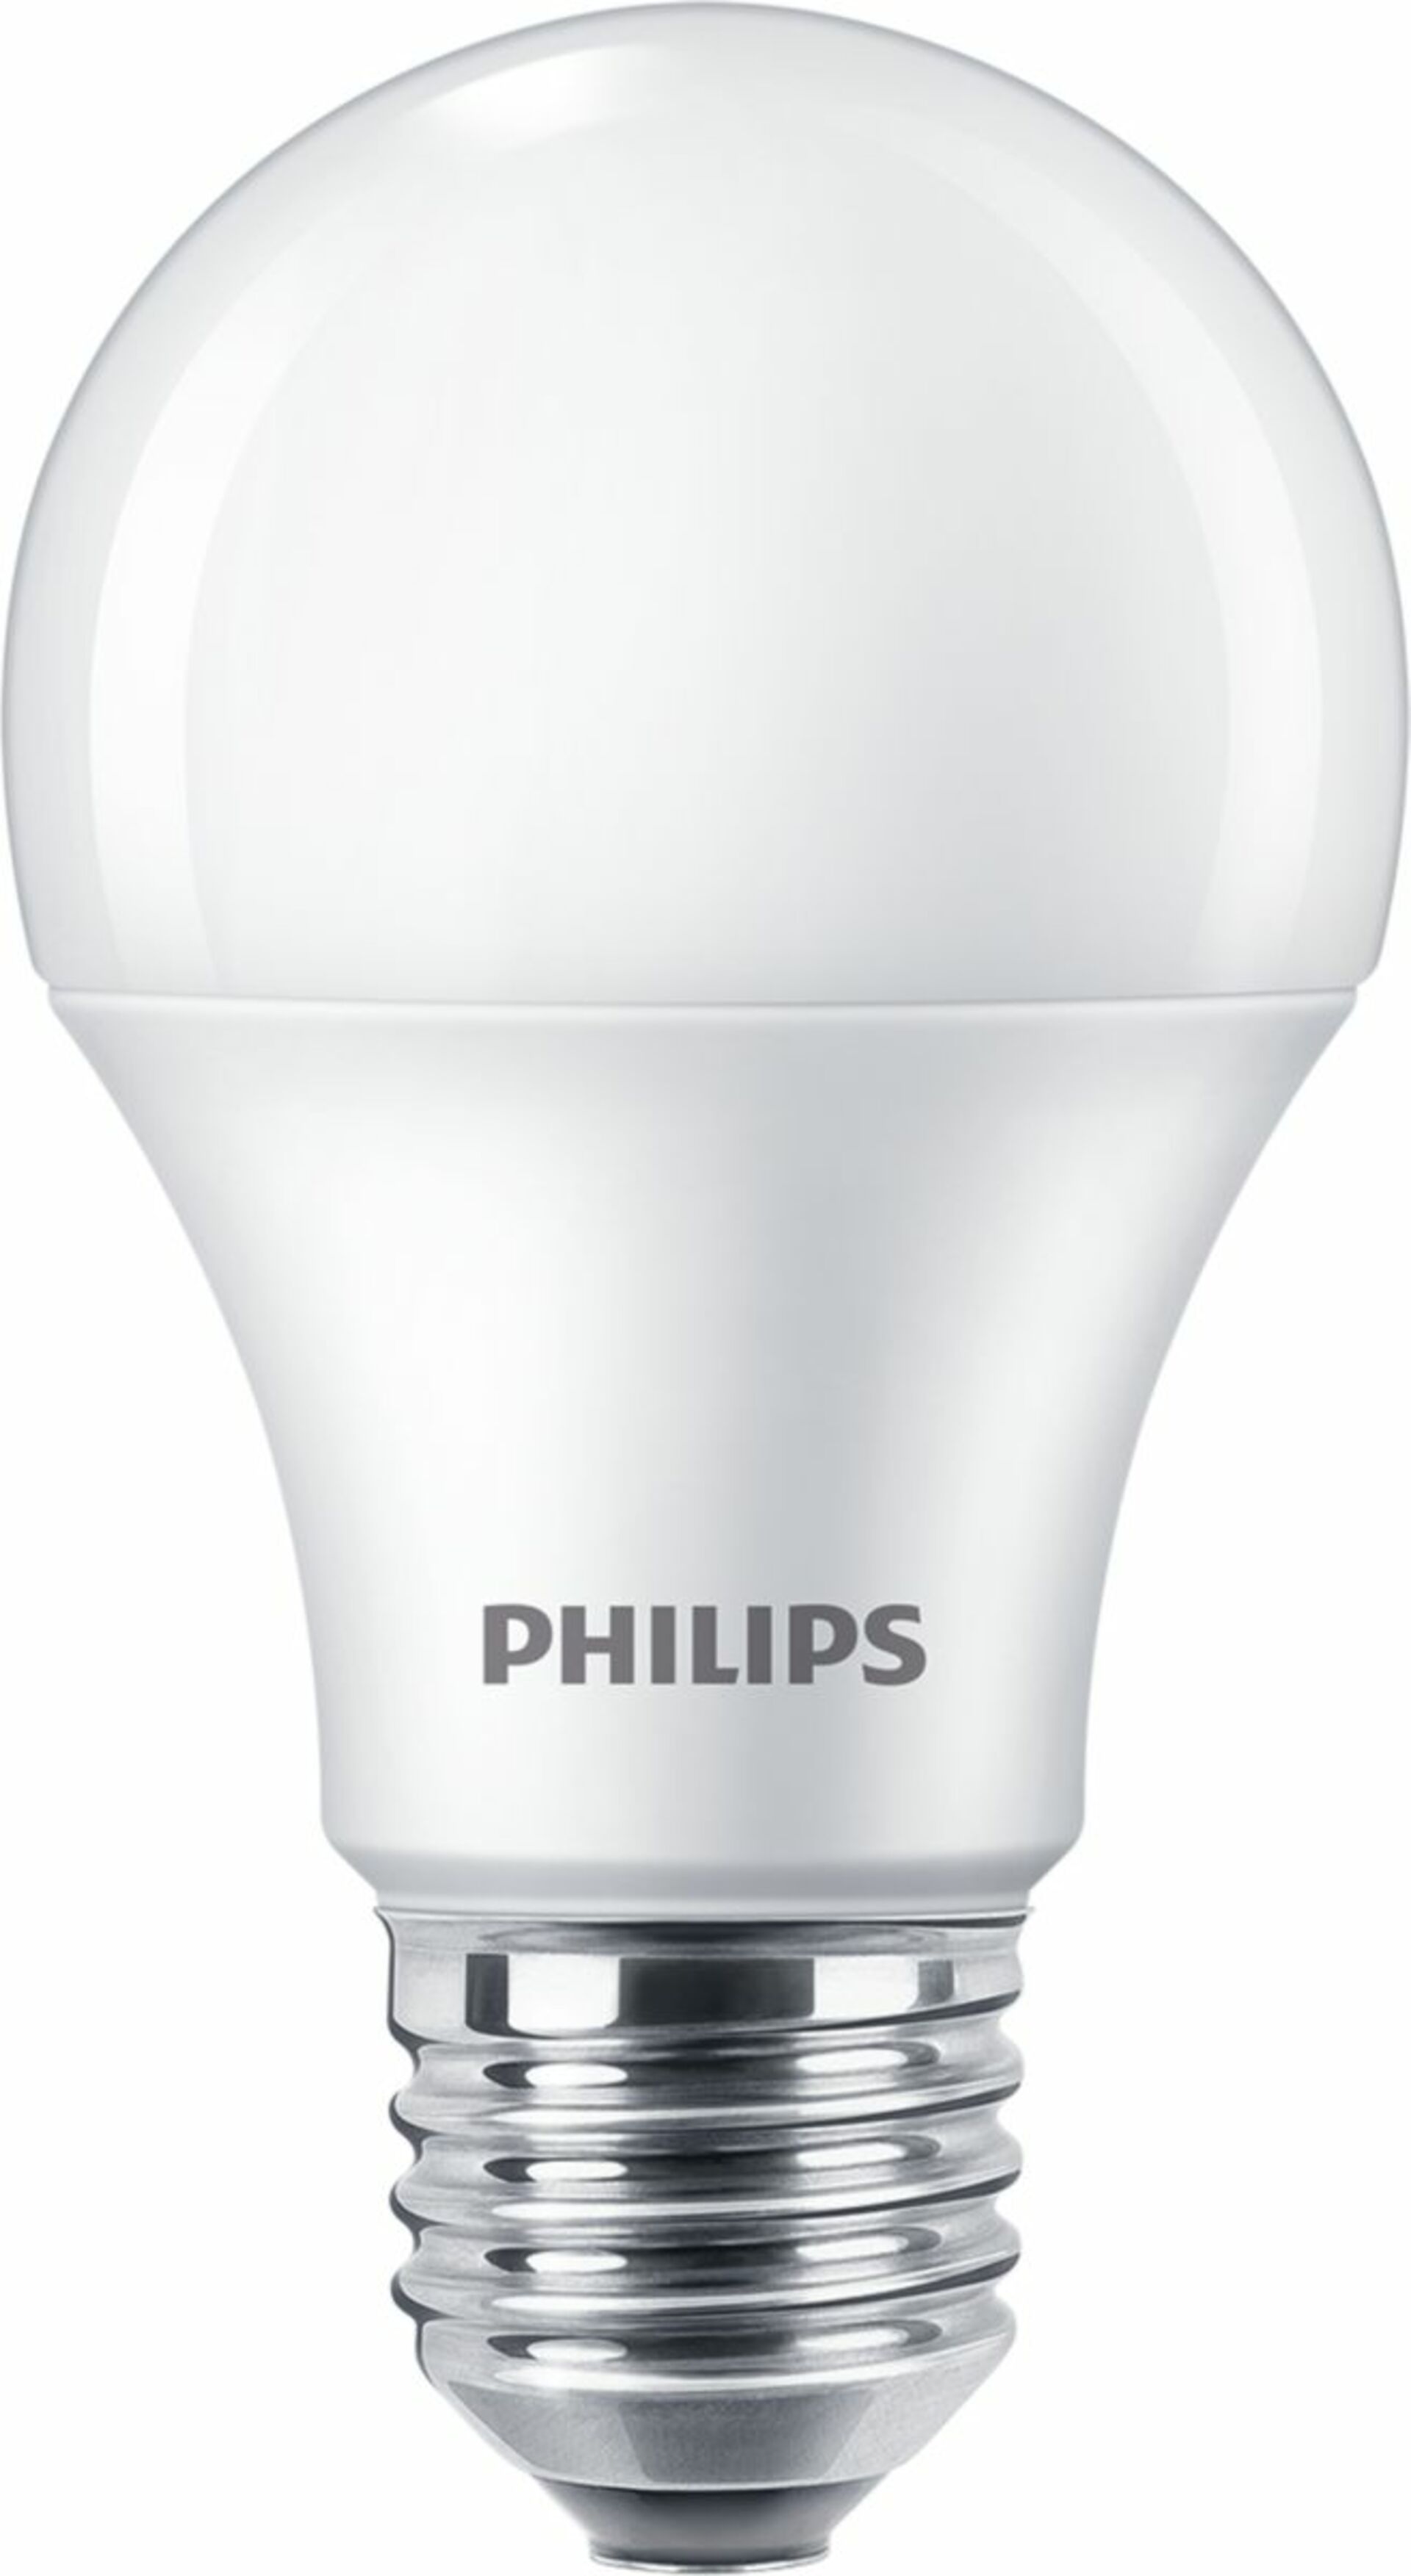 Philips CorePro LEDBulb ND 10-75W A60 E27 865